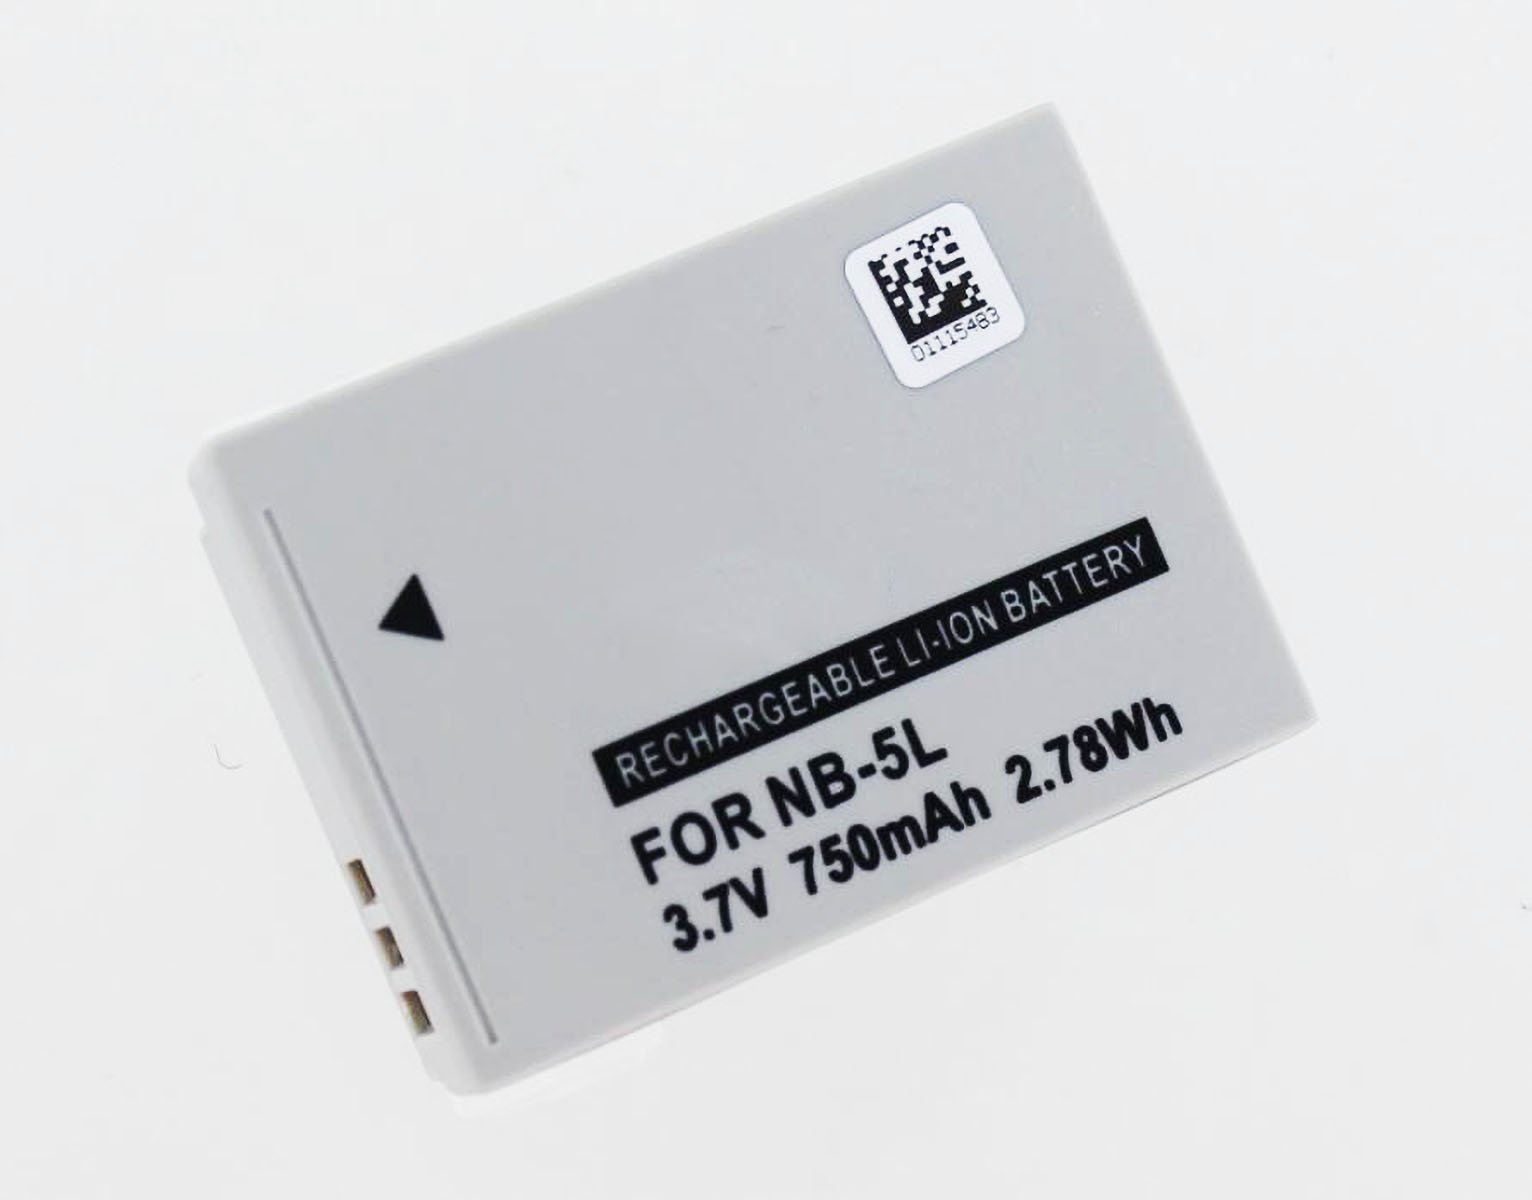 PowerShot S100 Digitalkameraakku, mAh 650 Akku Li-Ion Li-Ion, 3.7 (NB-5L) kompatibel AGI Canon Volt, mit